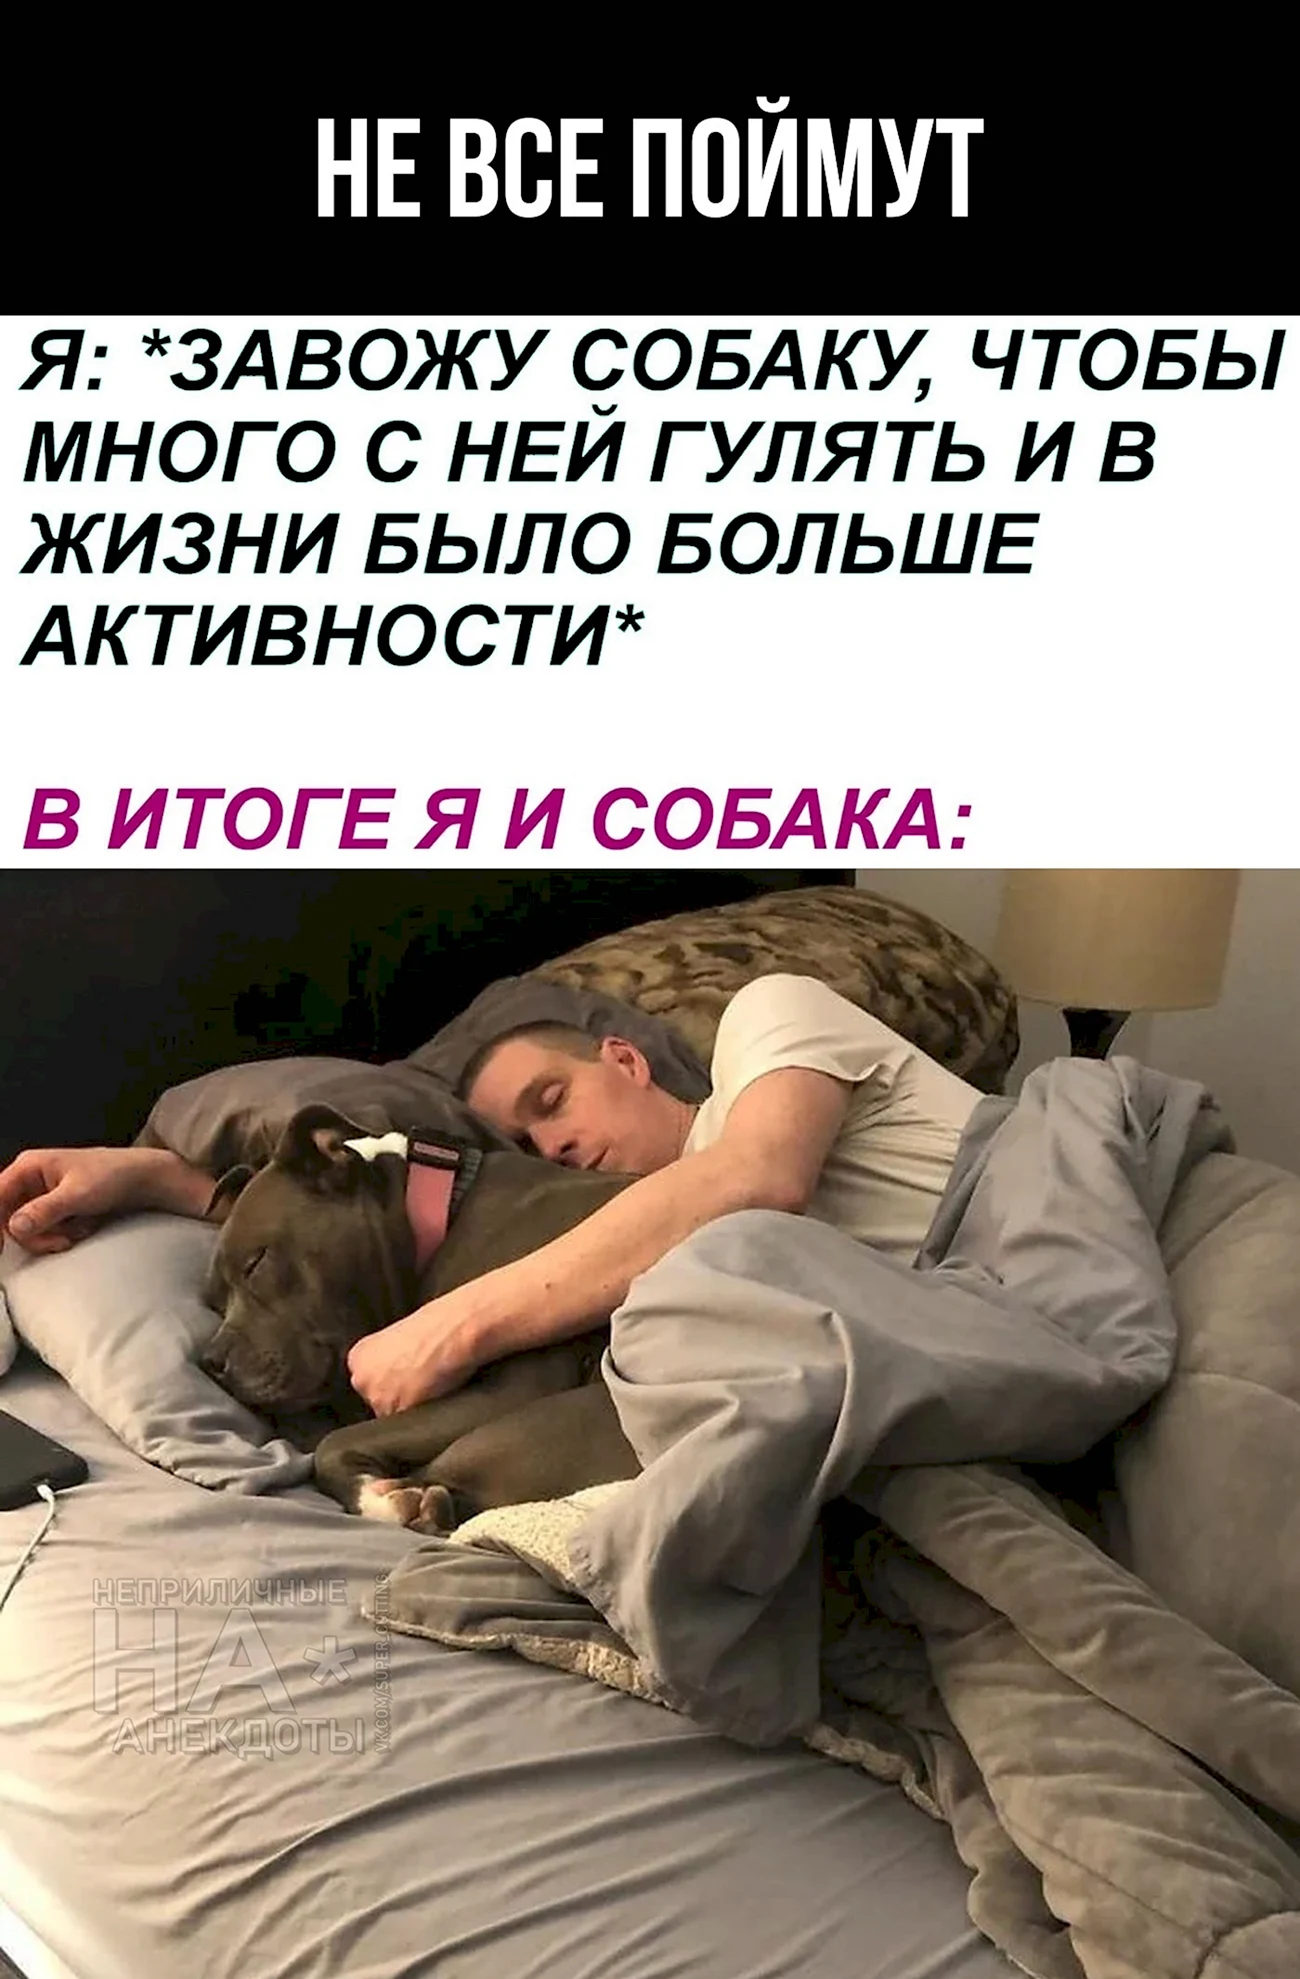 Собака в кровати с хозяином. Картинка